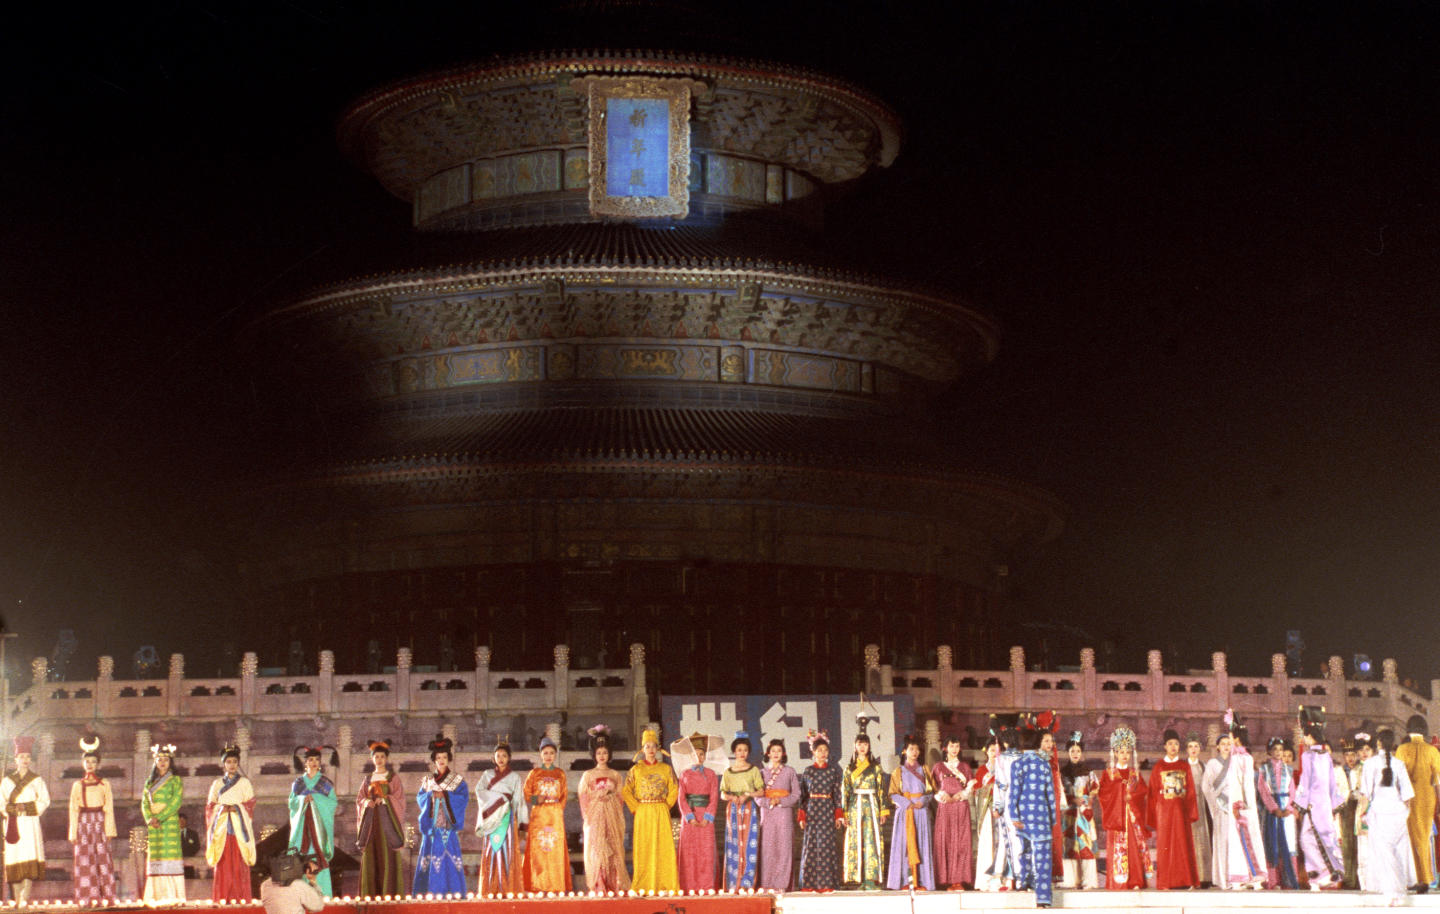 93中國國際服裝服飾博覽會，于5月14日至19日在北京國際貿易中心舉行。世界服裝設計界的3位巨匠——意大利的瓦倫蒂諾、費雷和法國的皮爾·卡丹，都攜帶精品參展，並舉辦專場時裝表演。1993年5月15日，“世紀風”大型時裝表演在北京天壇公園祈年殿前舉行，200名中外模特兒參加了演出。新華社記者戴紀明攝